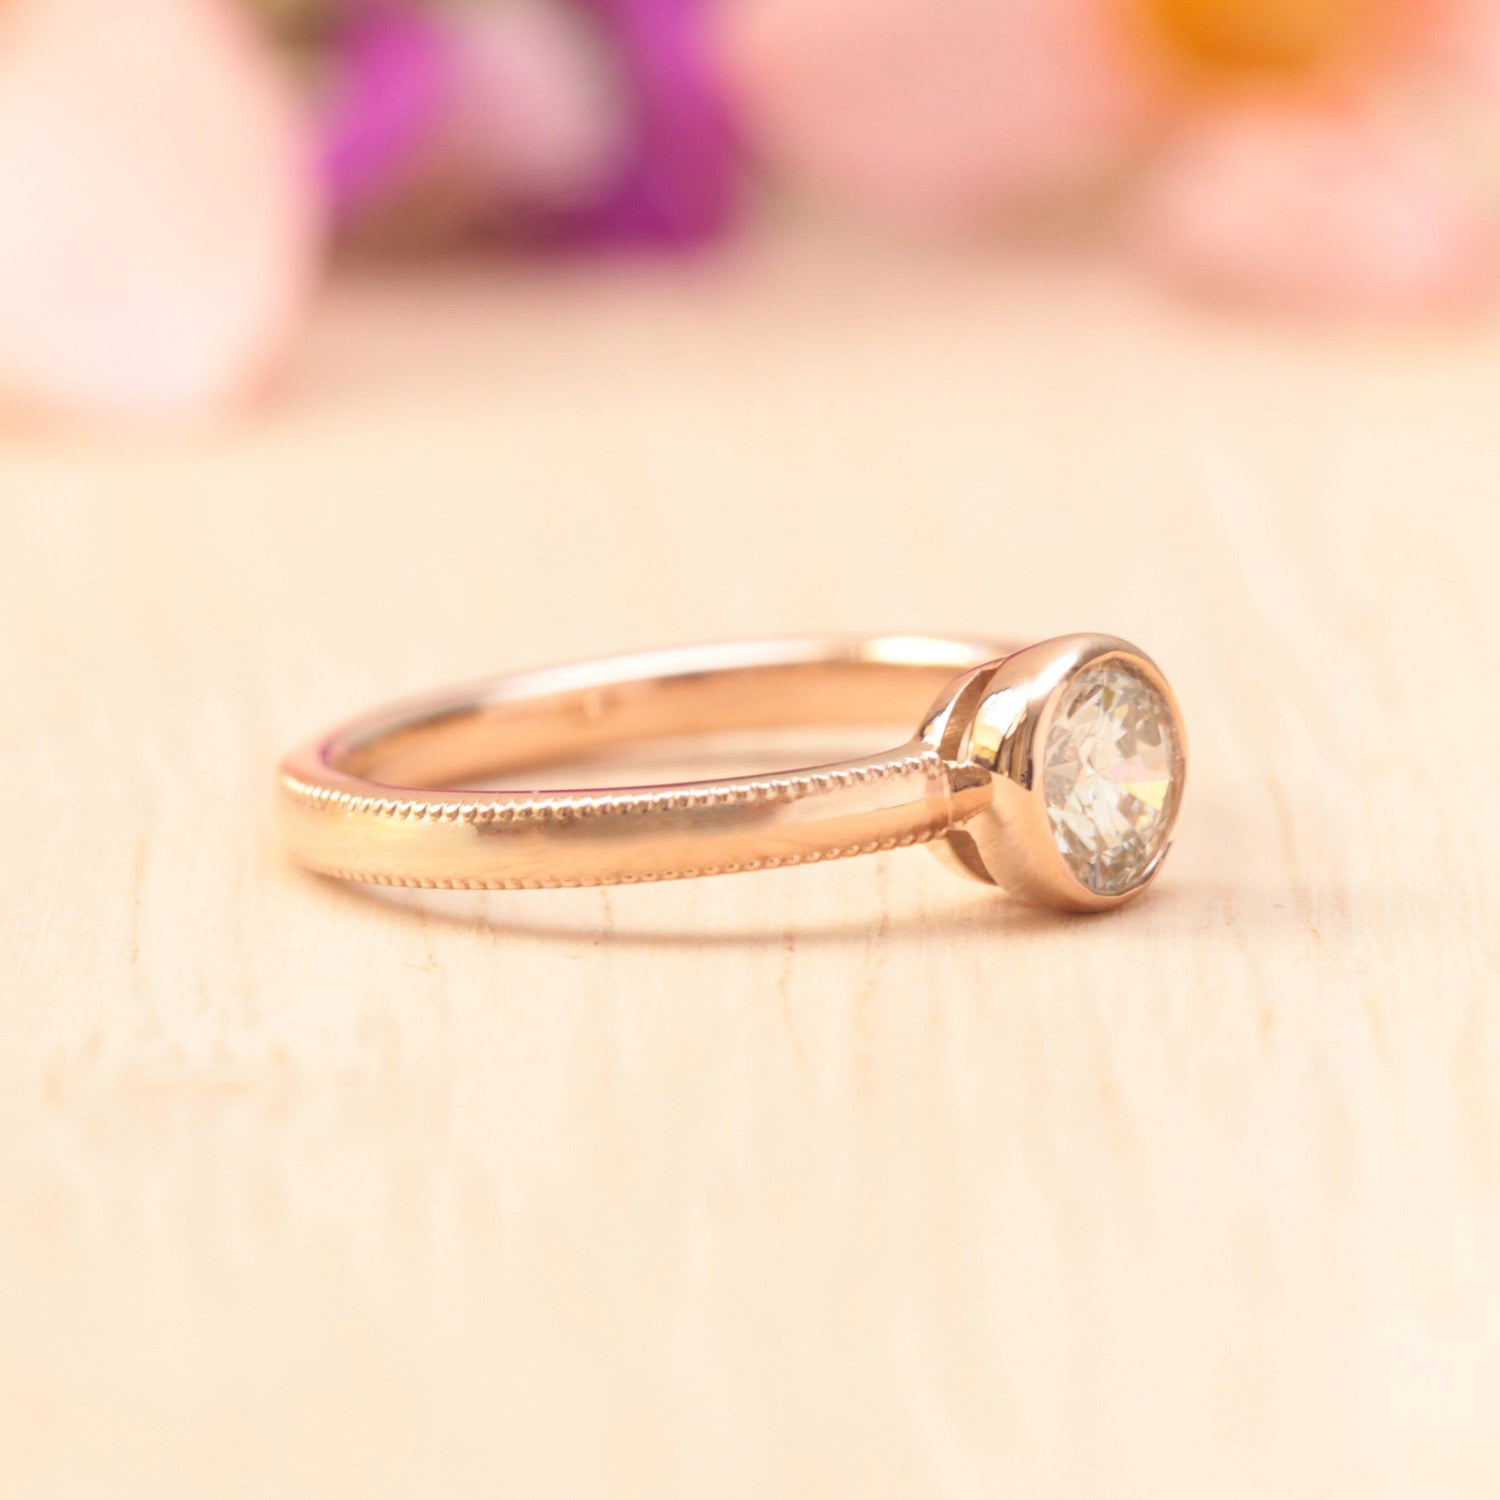 Milgrain diamond engagement ring - Vinny & Charles